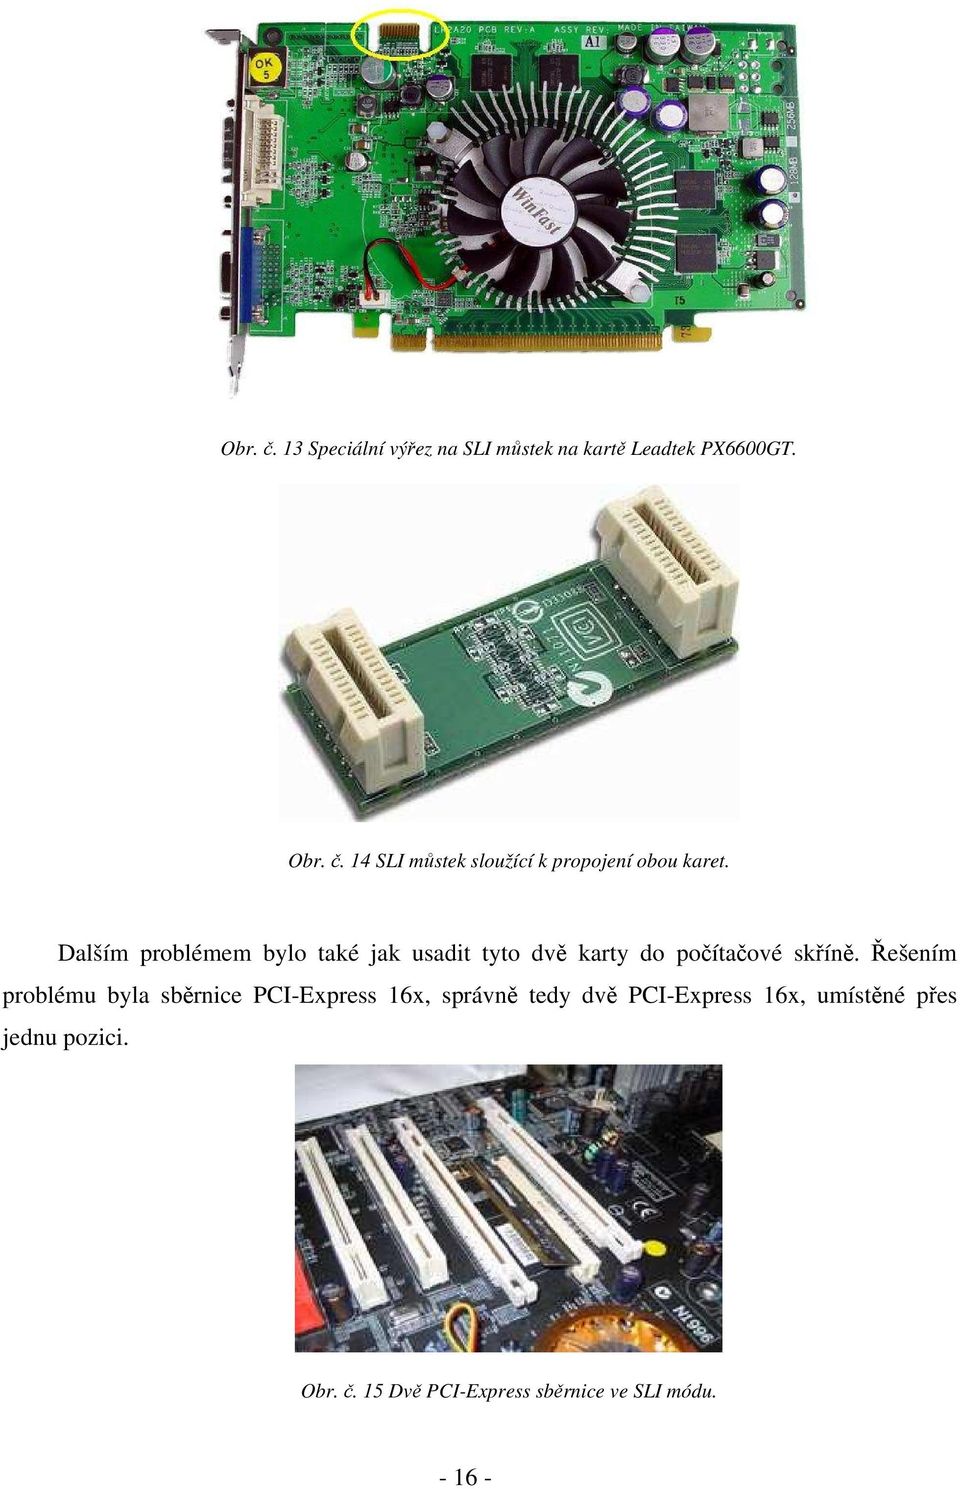 Řešením problému byla sběrnice PCI-Express 16x, správně tedy dvě PCI-Express 16x, umístěné